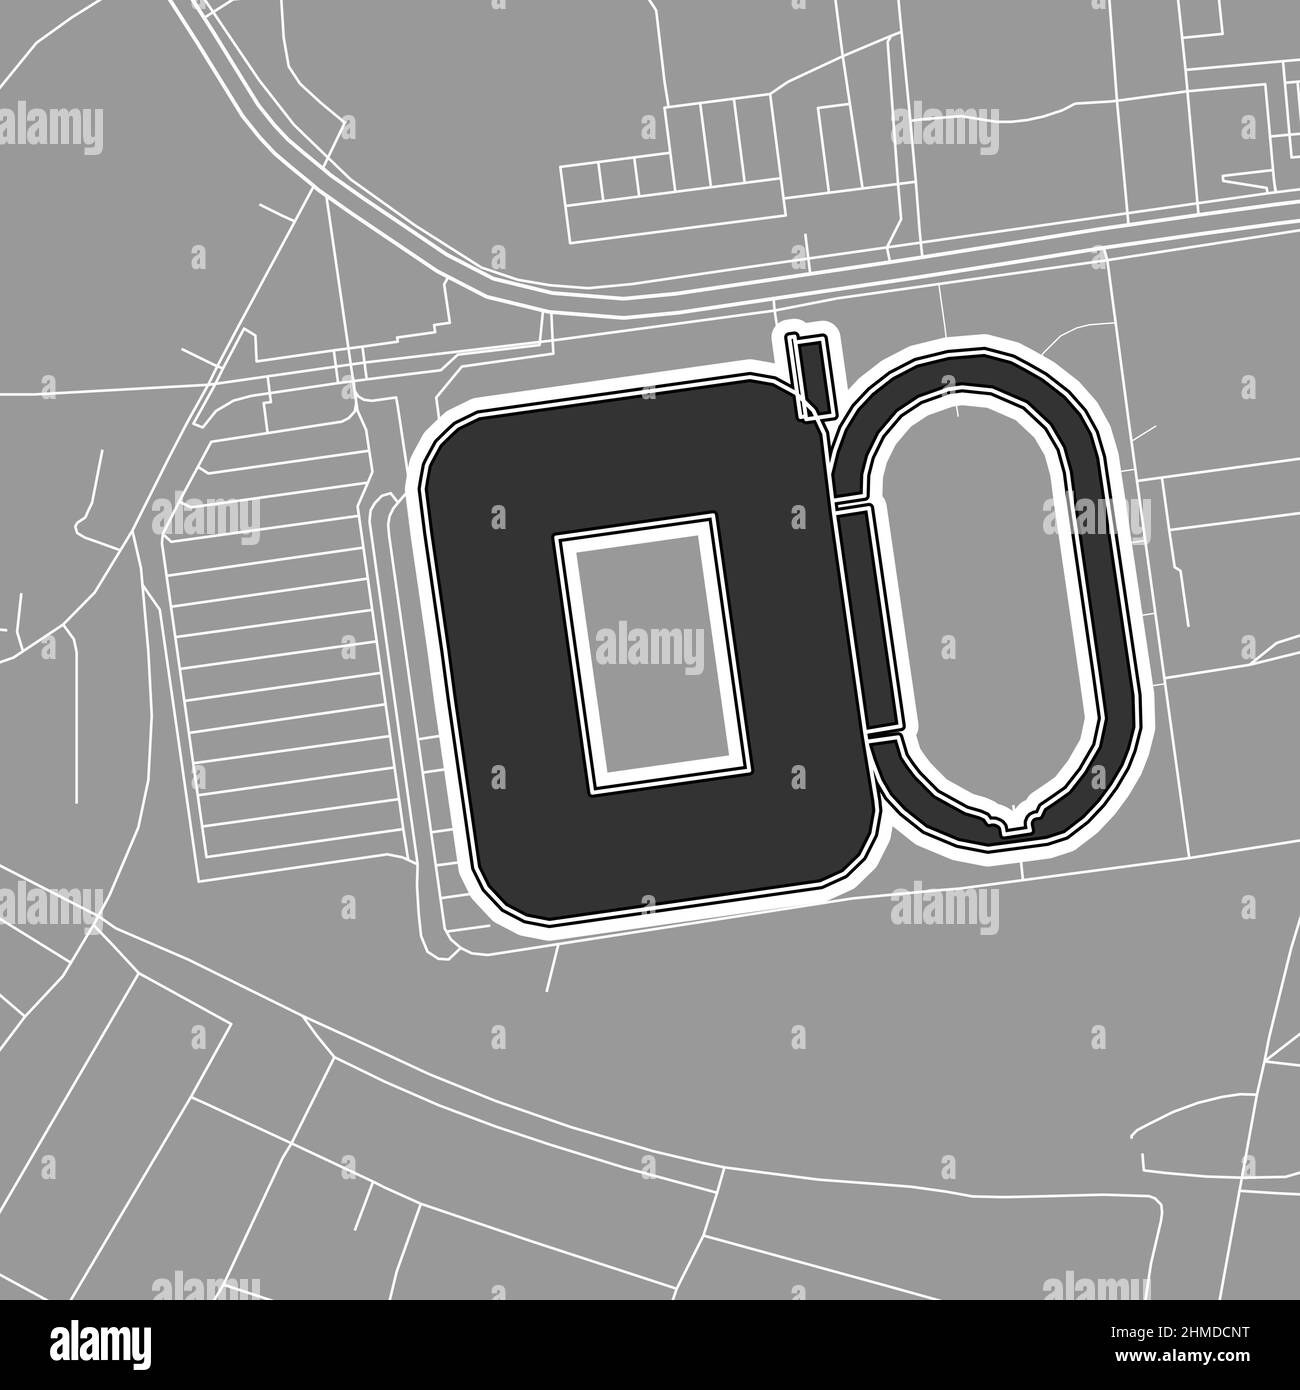 Dortmund, stadio MLB di baseball, mappa vettoriale. La mappa dello stadio di baseball è stata disegnata con aree bianche e linee per le strade principali, le strade laterali. Illustrazione Vettoriale